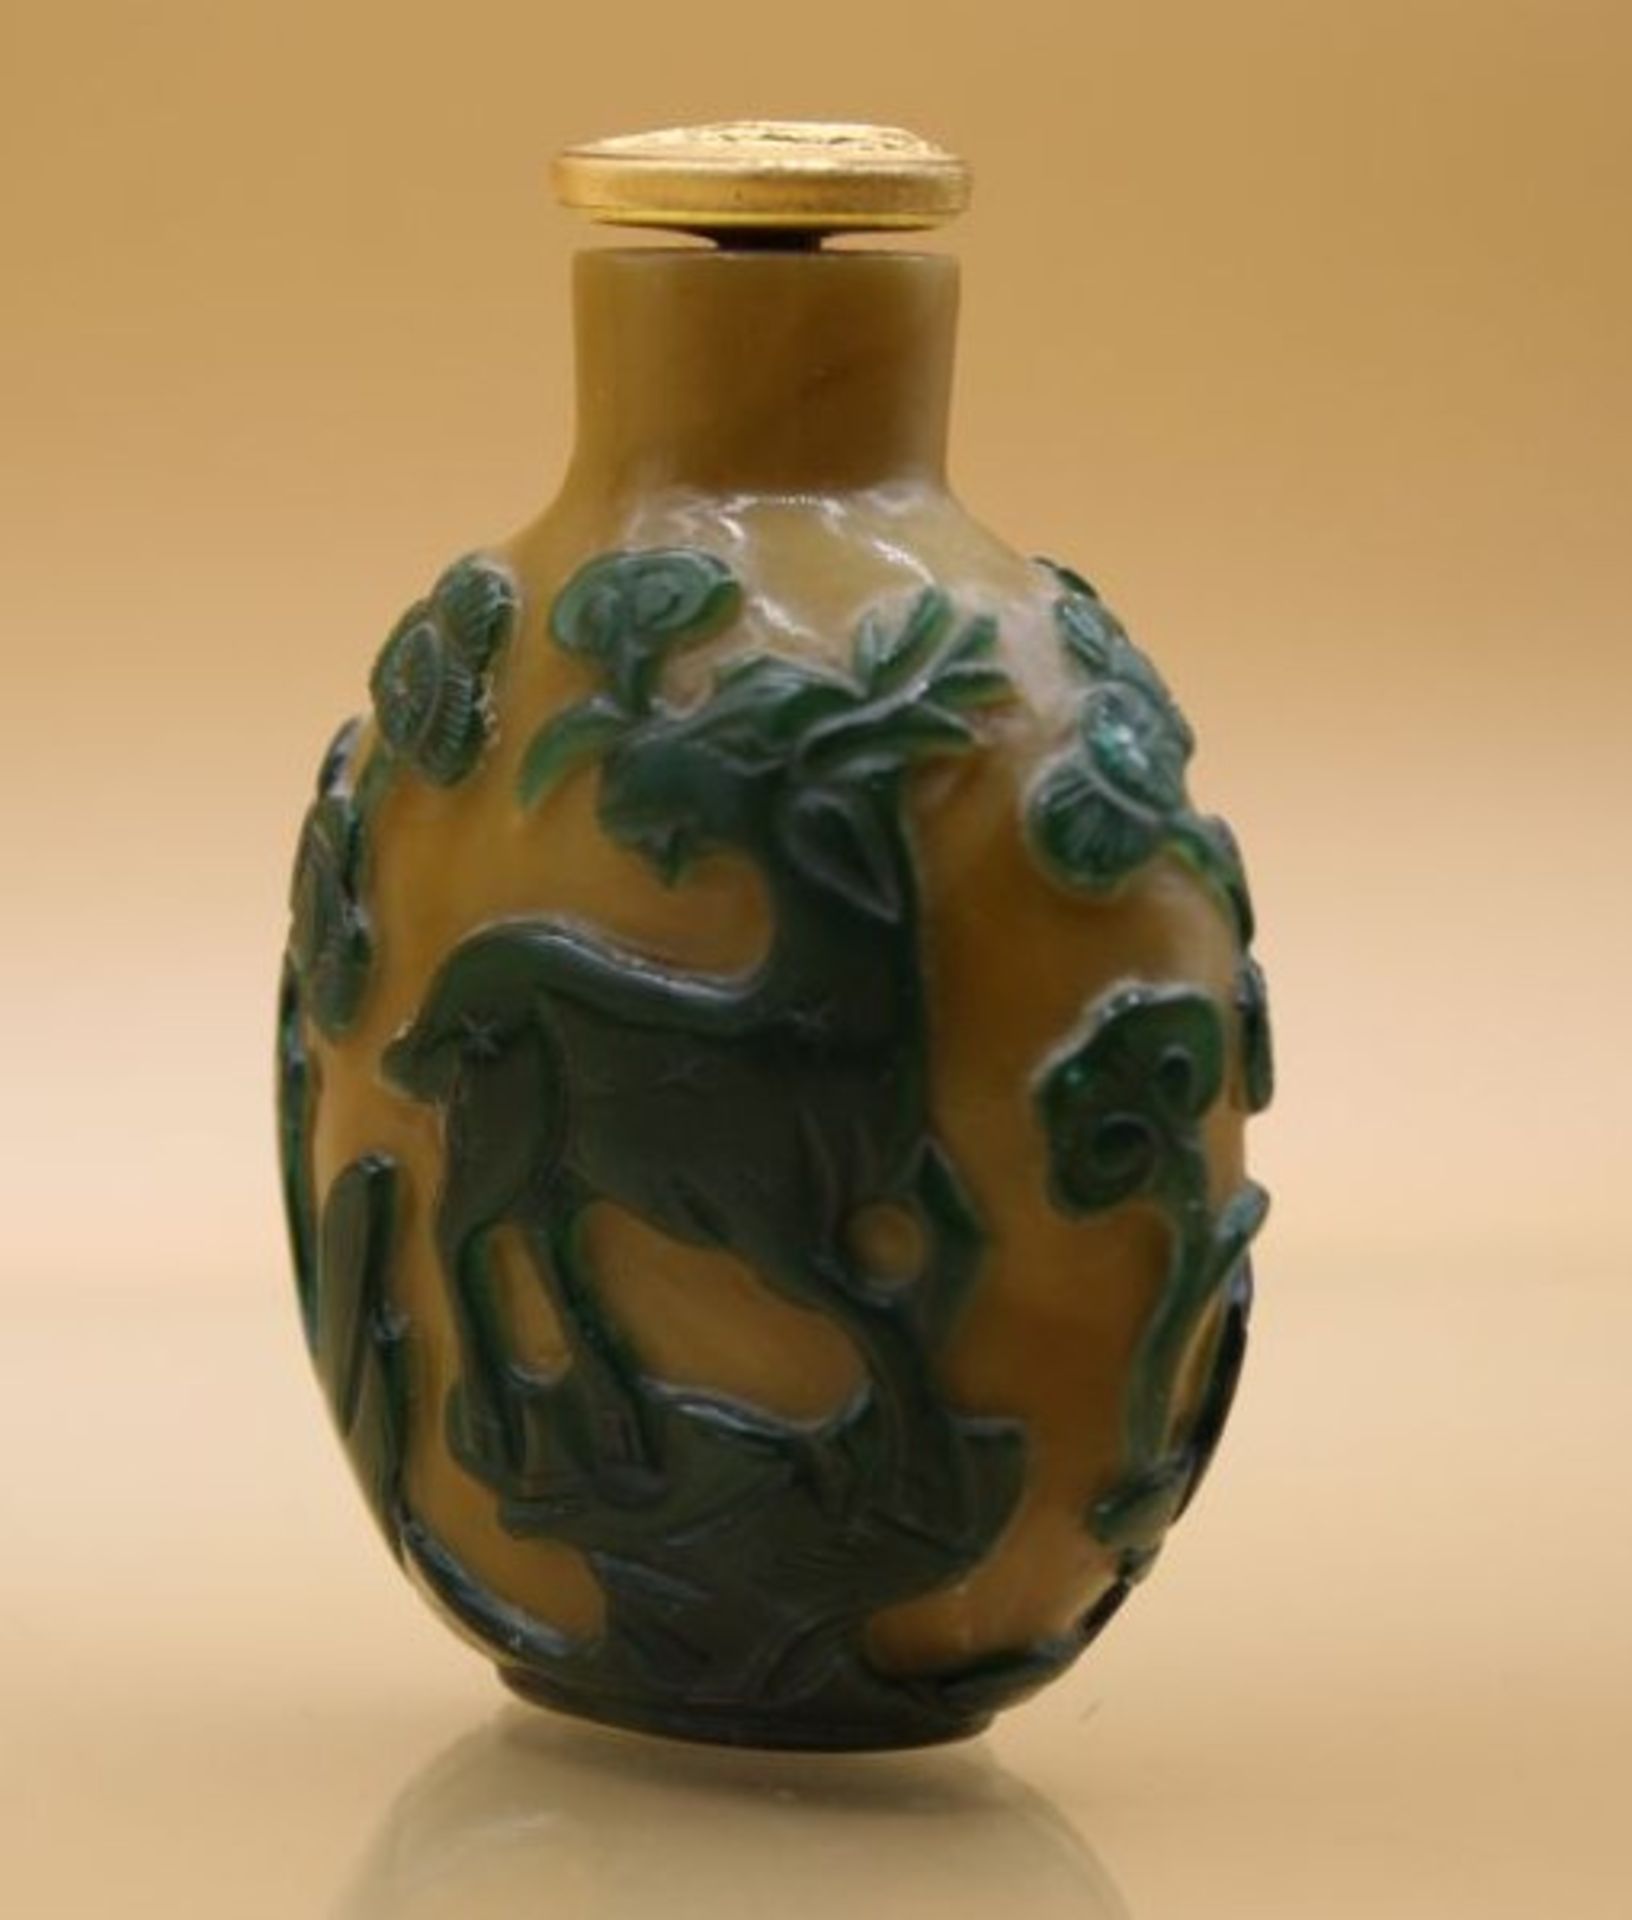 fein gearbeitete Snuff-Bottle, China, wohl 18./19. Jhd., geschnittene Tierdarstellungen, H-6cm. - Bild 2 aus 5